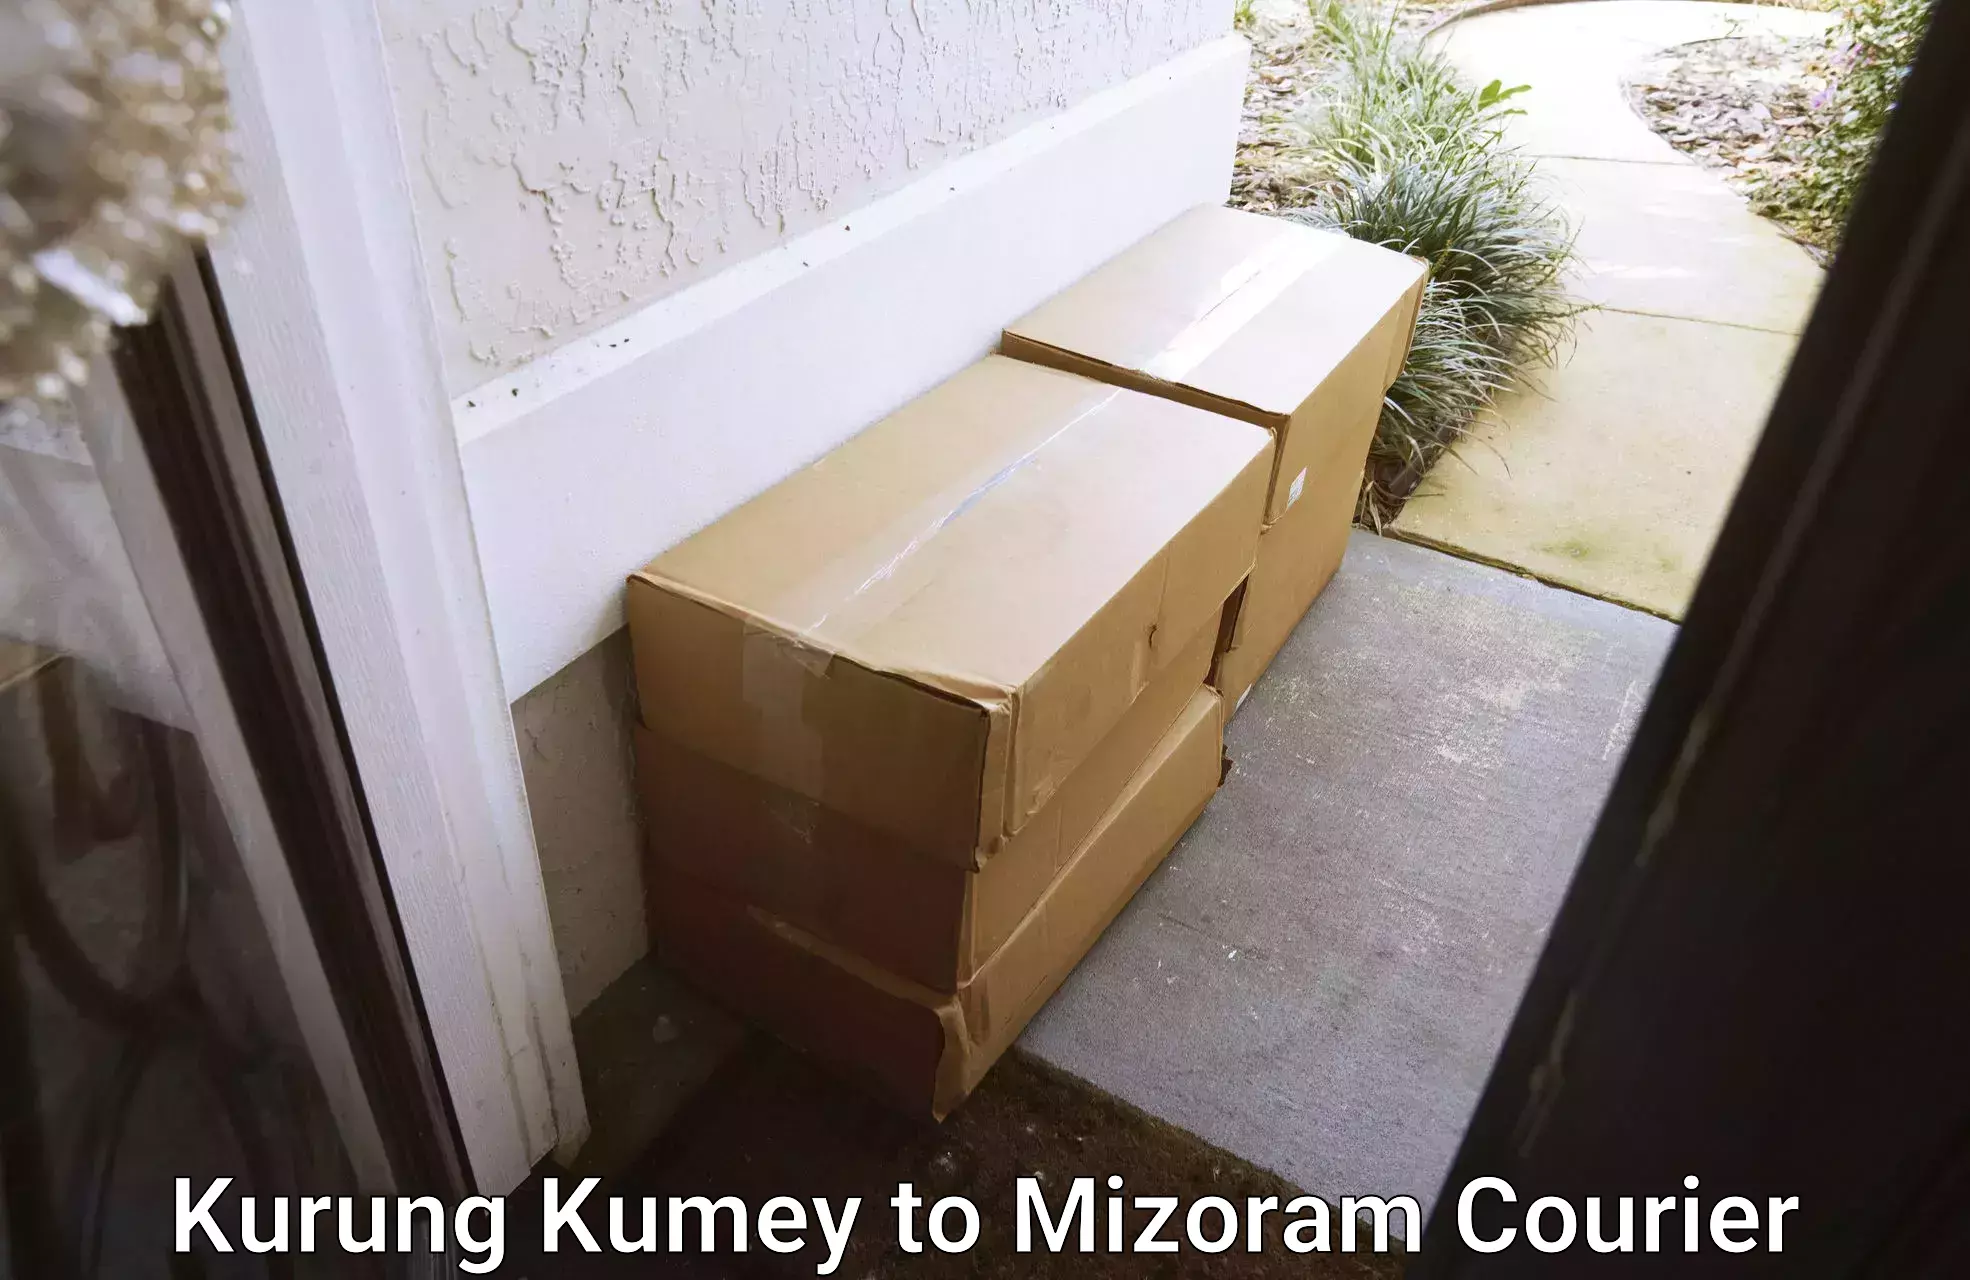 Efficient parcel transport Kurung Kumey to Mizoram